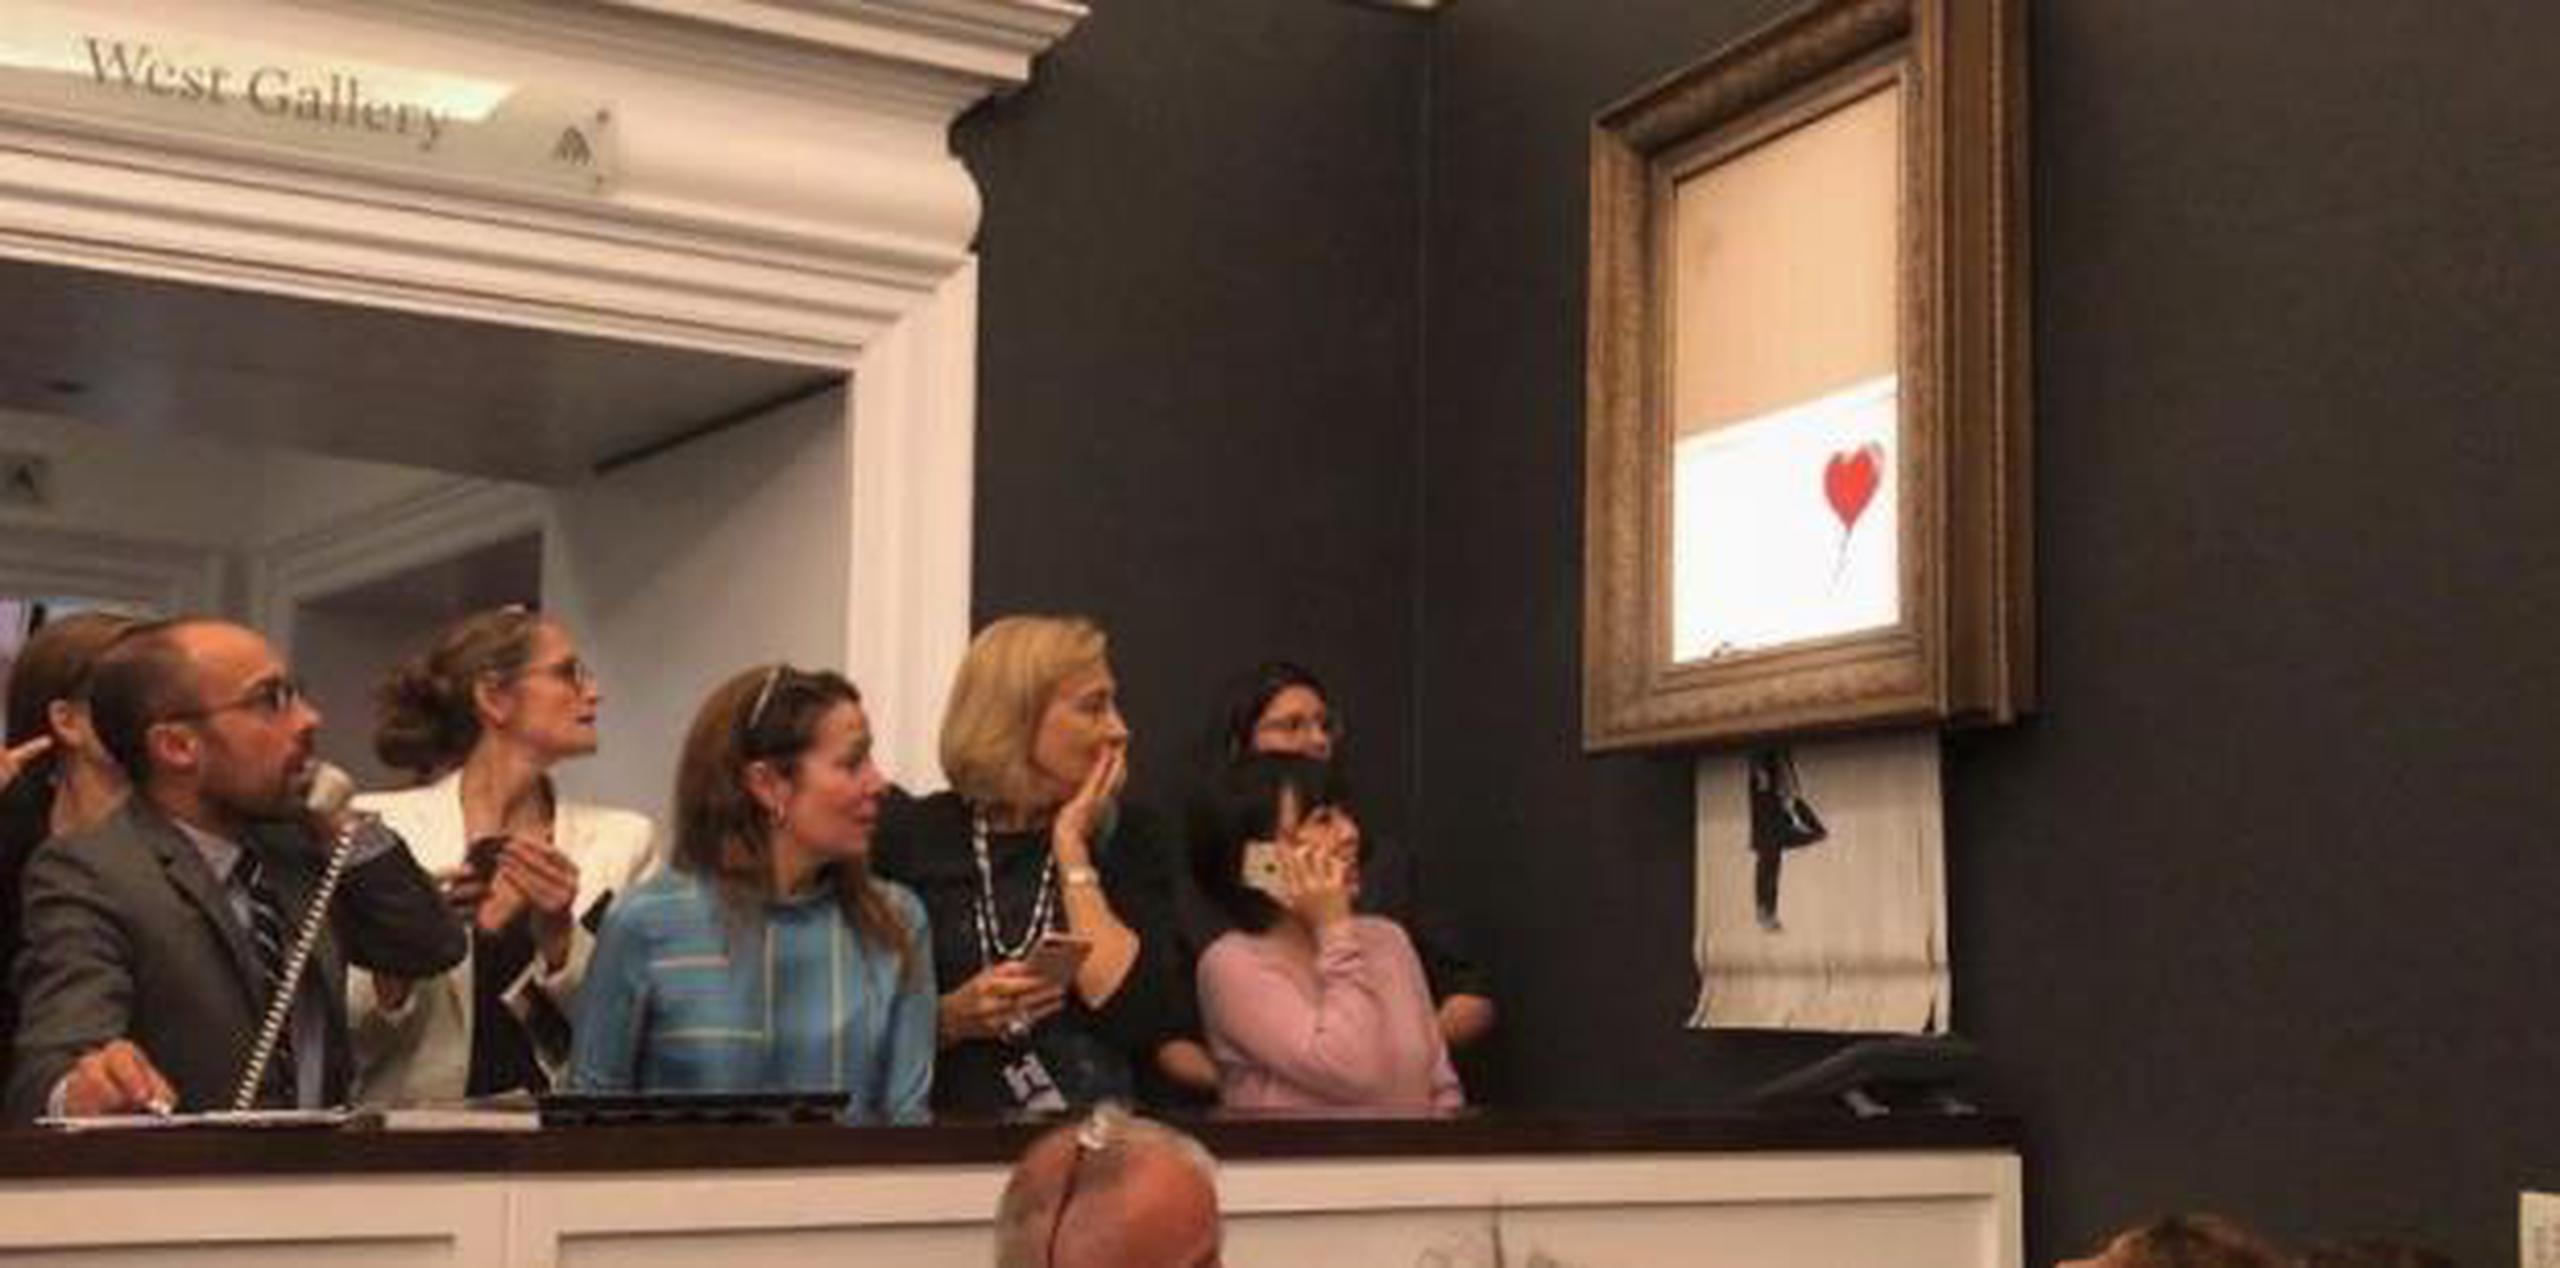 El cuadro de pintura en aerosol recaudó el triple de lo estimado e igualó el récord para el artista. (Instagram / @banksy)